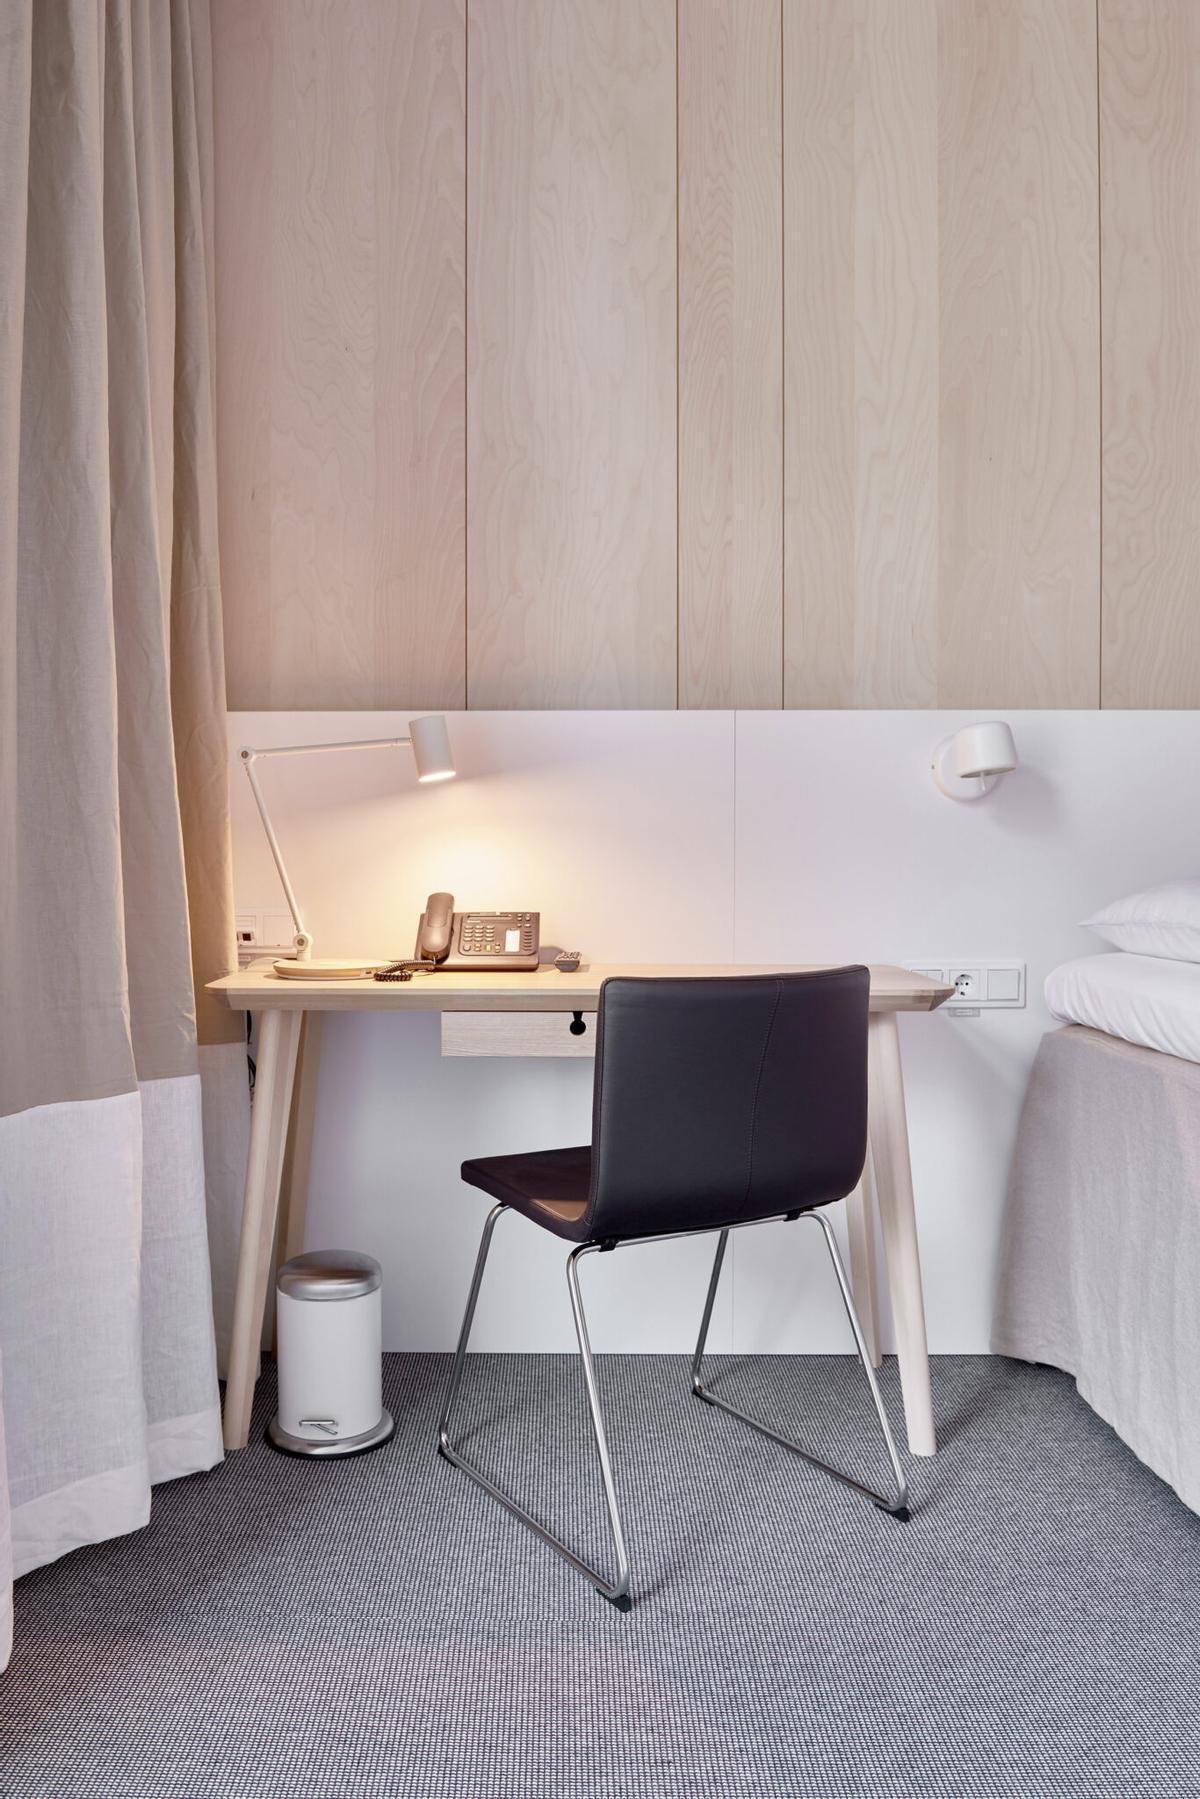 Detalle de una habitación doble del IKEA Hotell.